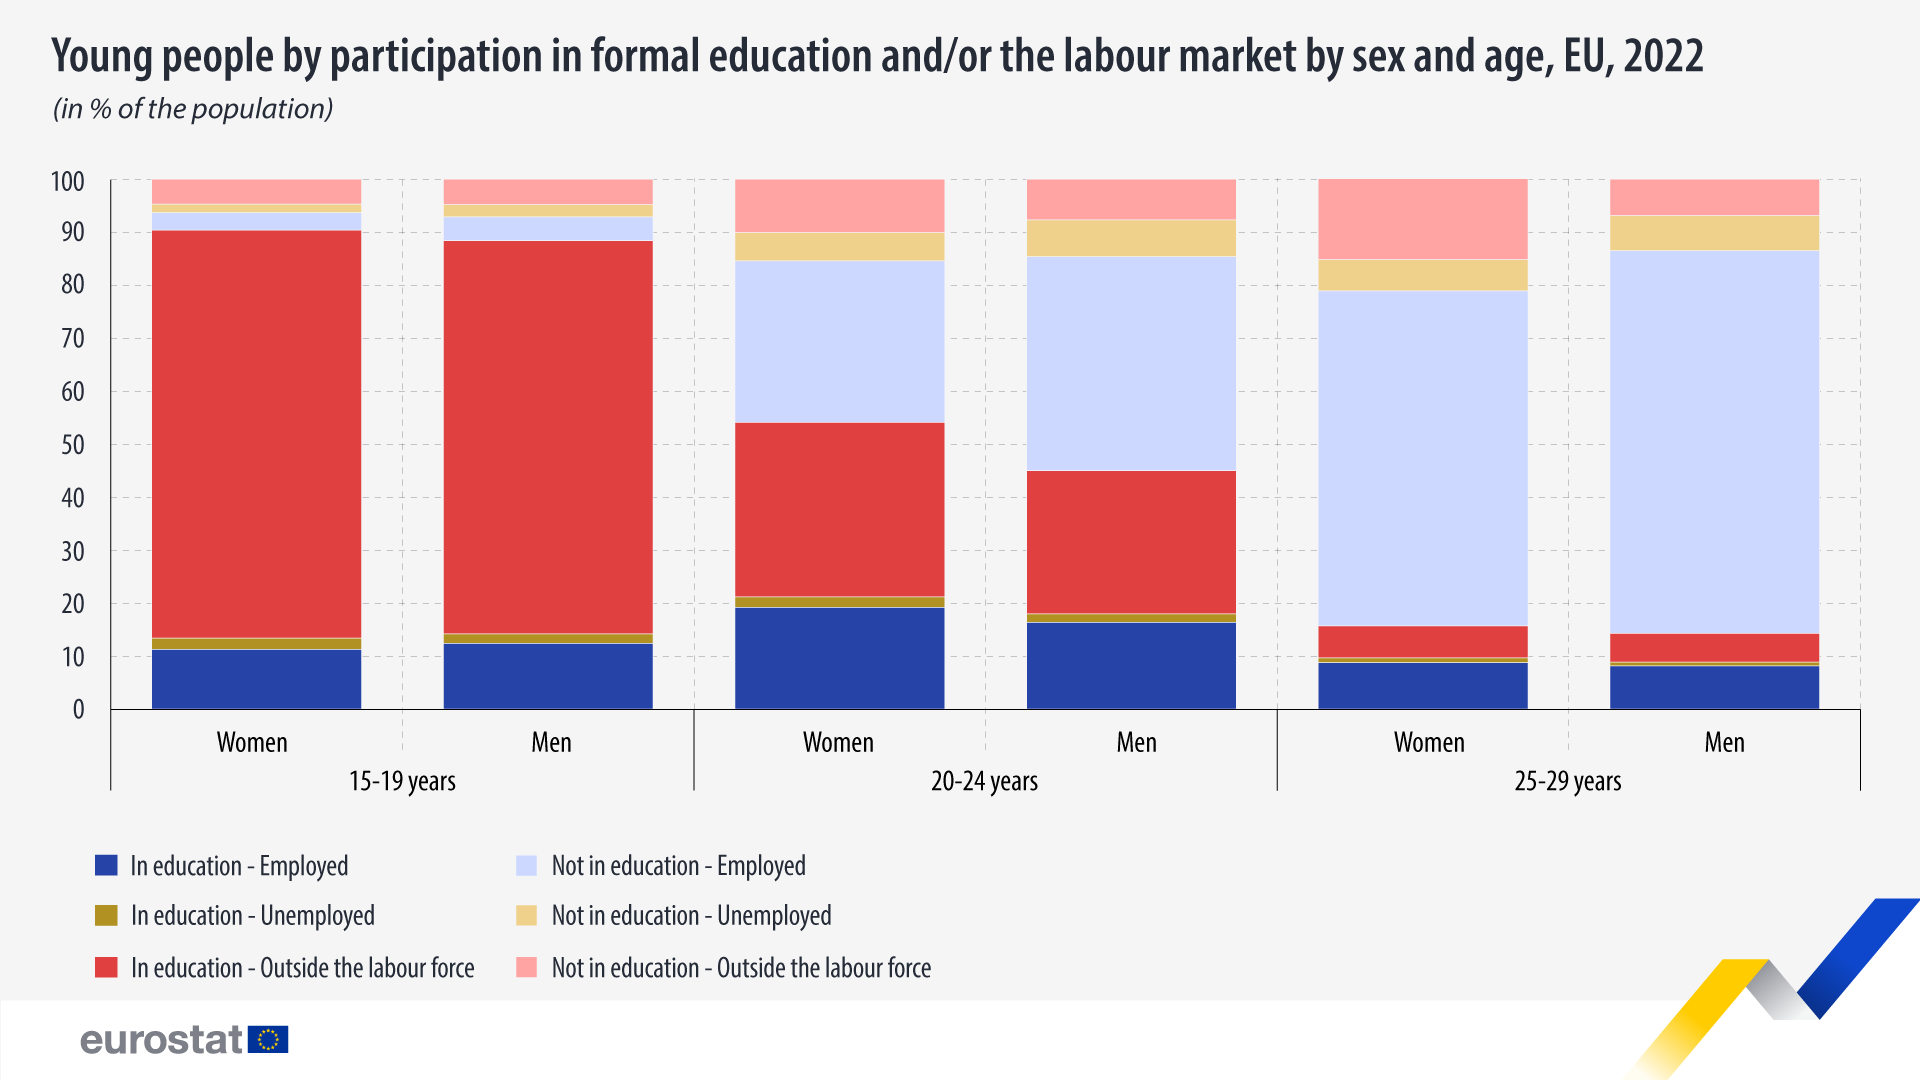 Գծավոր գծապատկեր. Երիտասարդներն ըստ պաշտոնական կրթության և/կամ աշխատաշուկայի մասնակցության, սեռի և տարիքի, ԵՄ, 2022 թ.